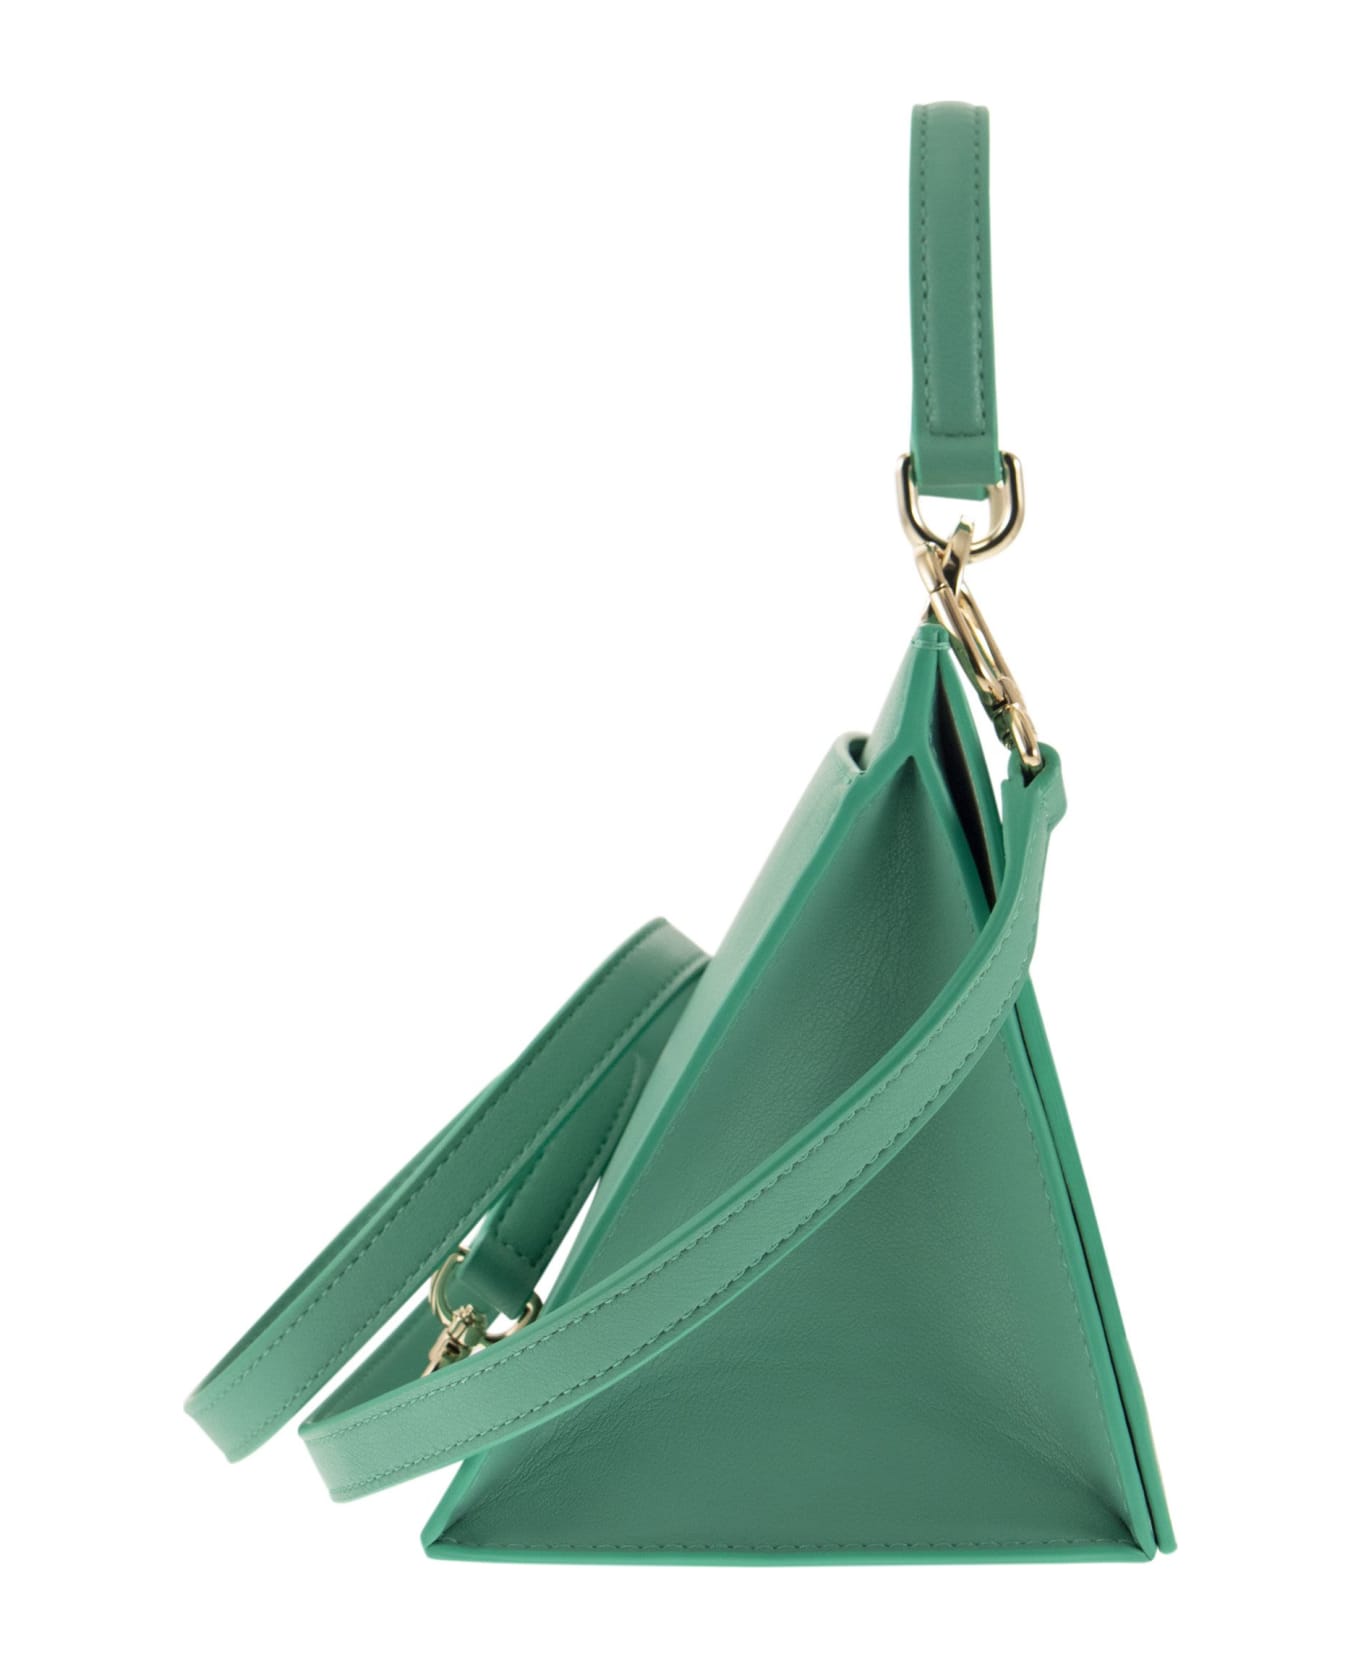 Furla Futura - Mini Handbag - Green トートバッグ